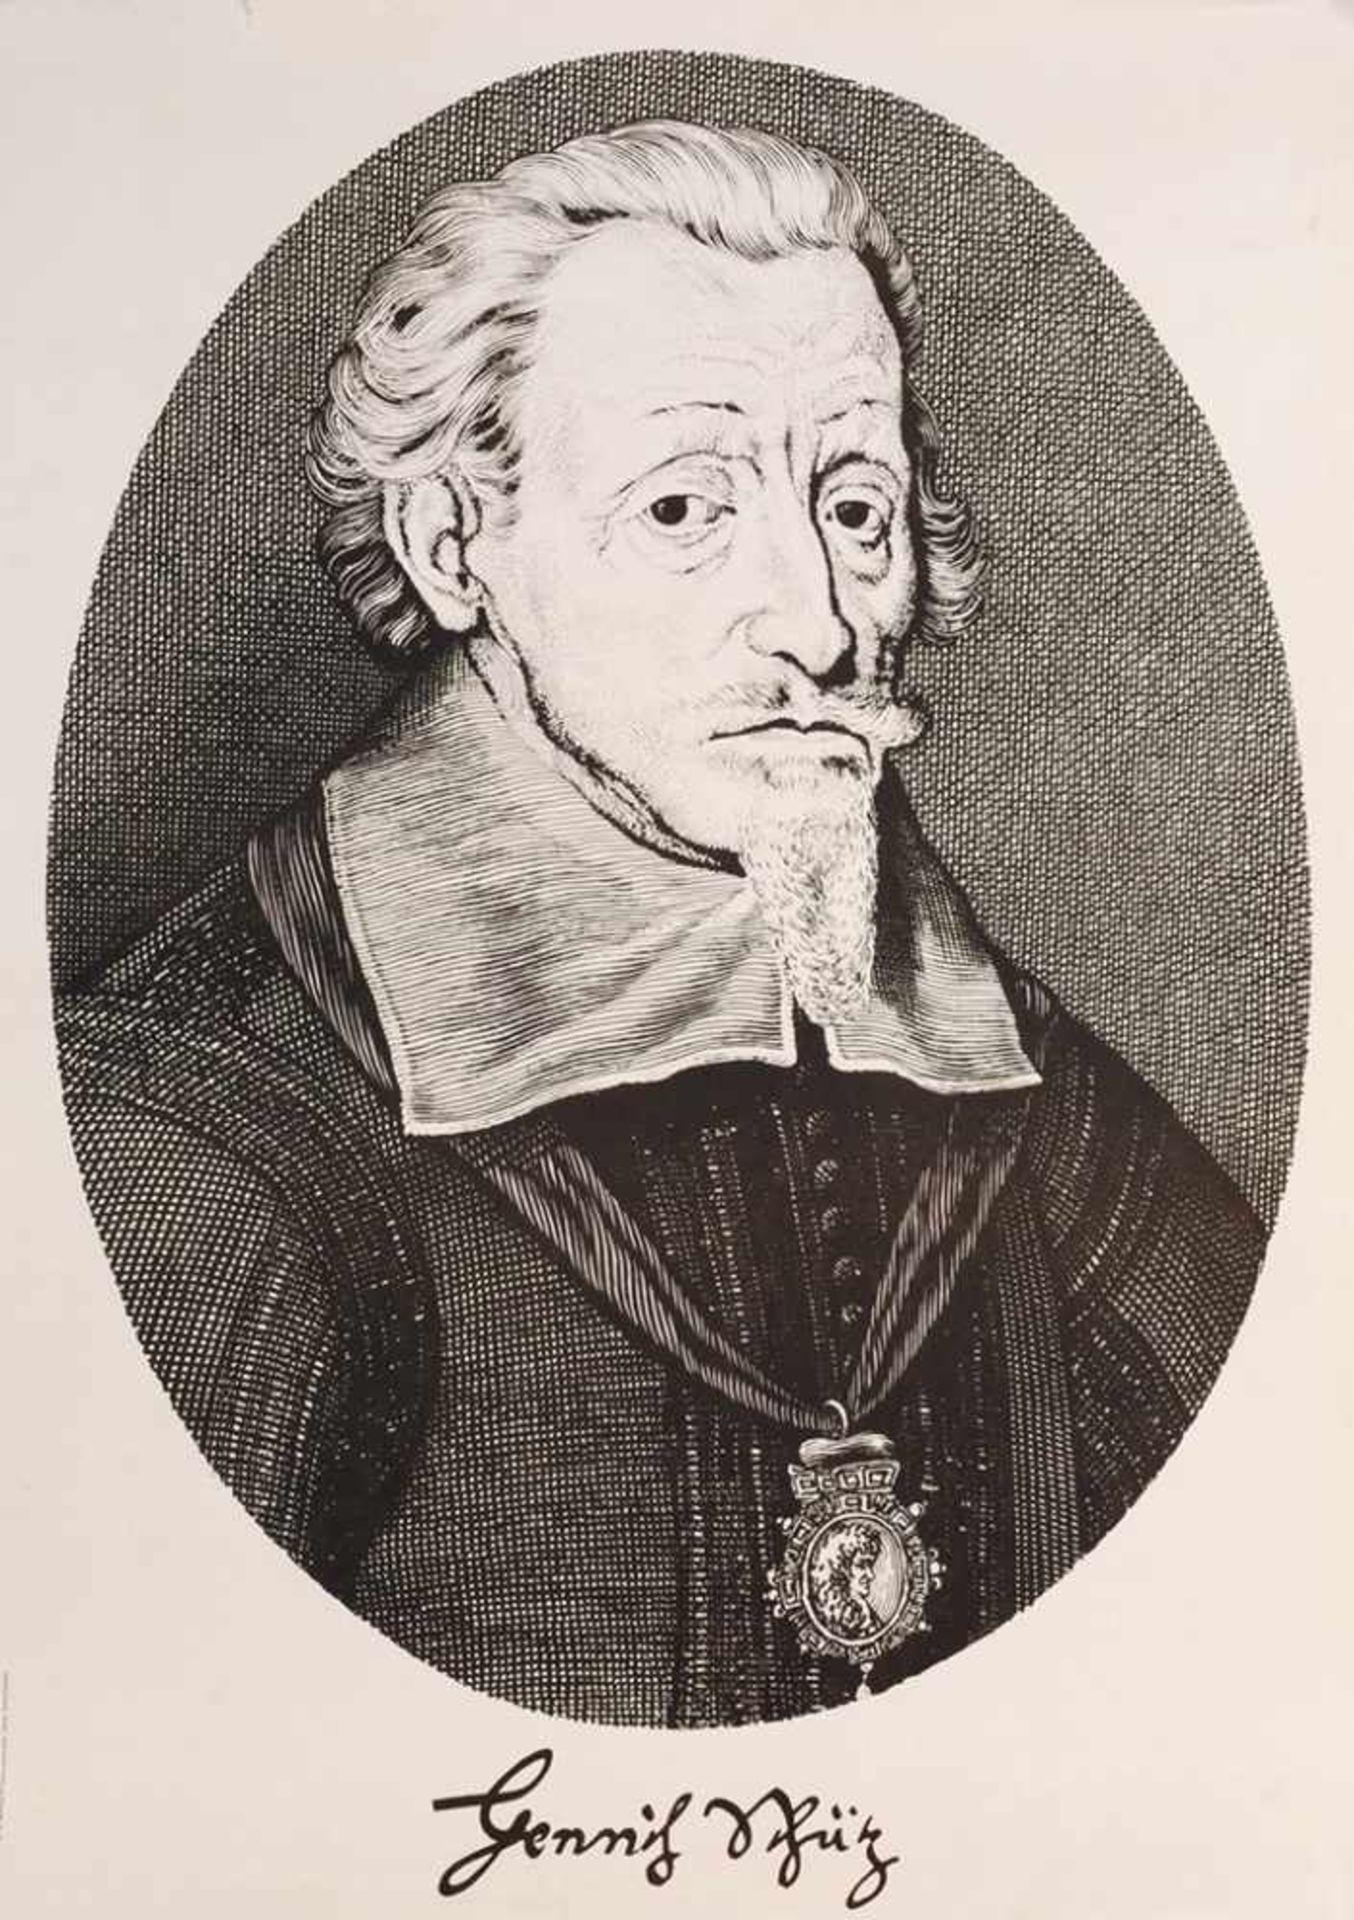 Plakat "Heinrich Schütz" Offset. Im Oval Darstellung eines Porträtausschnittes von Heinrich Schütz